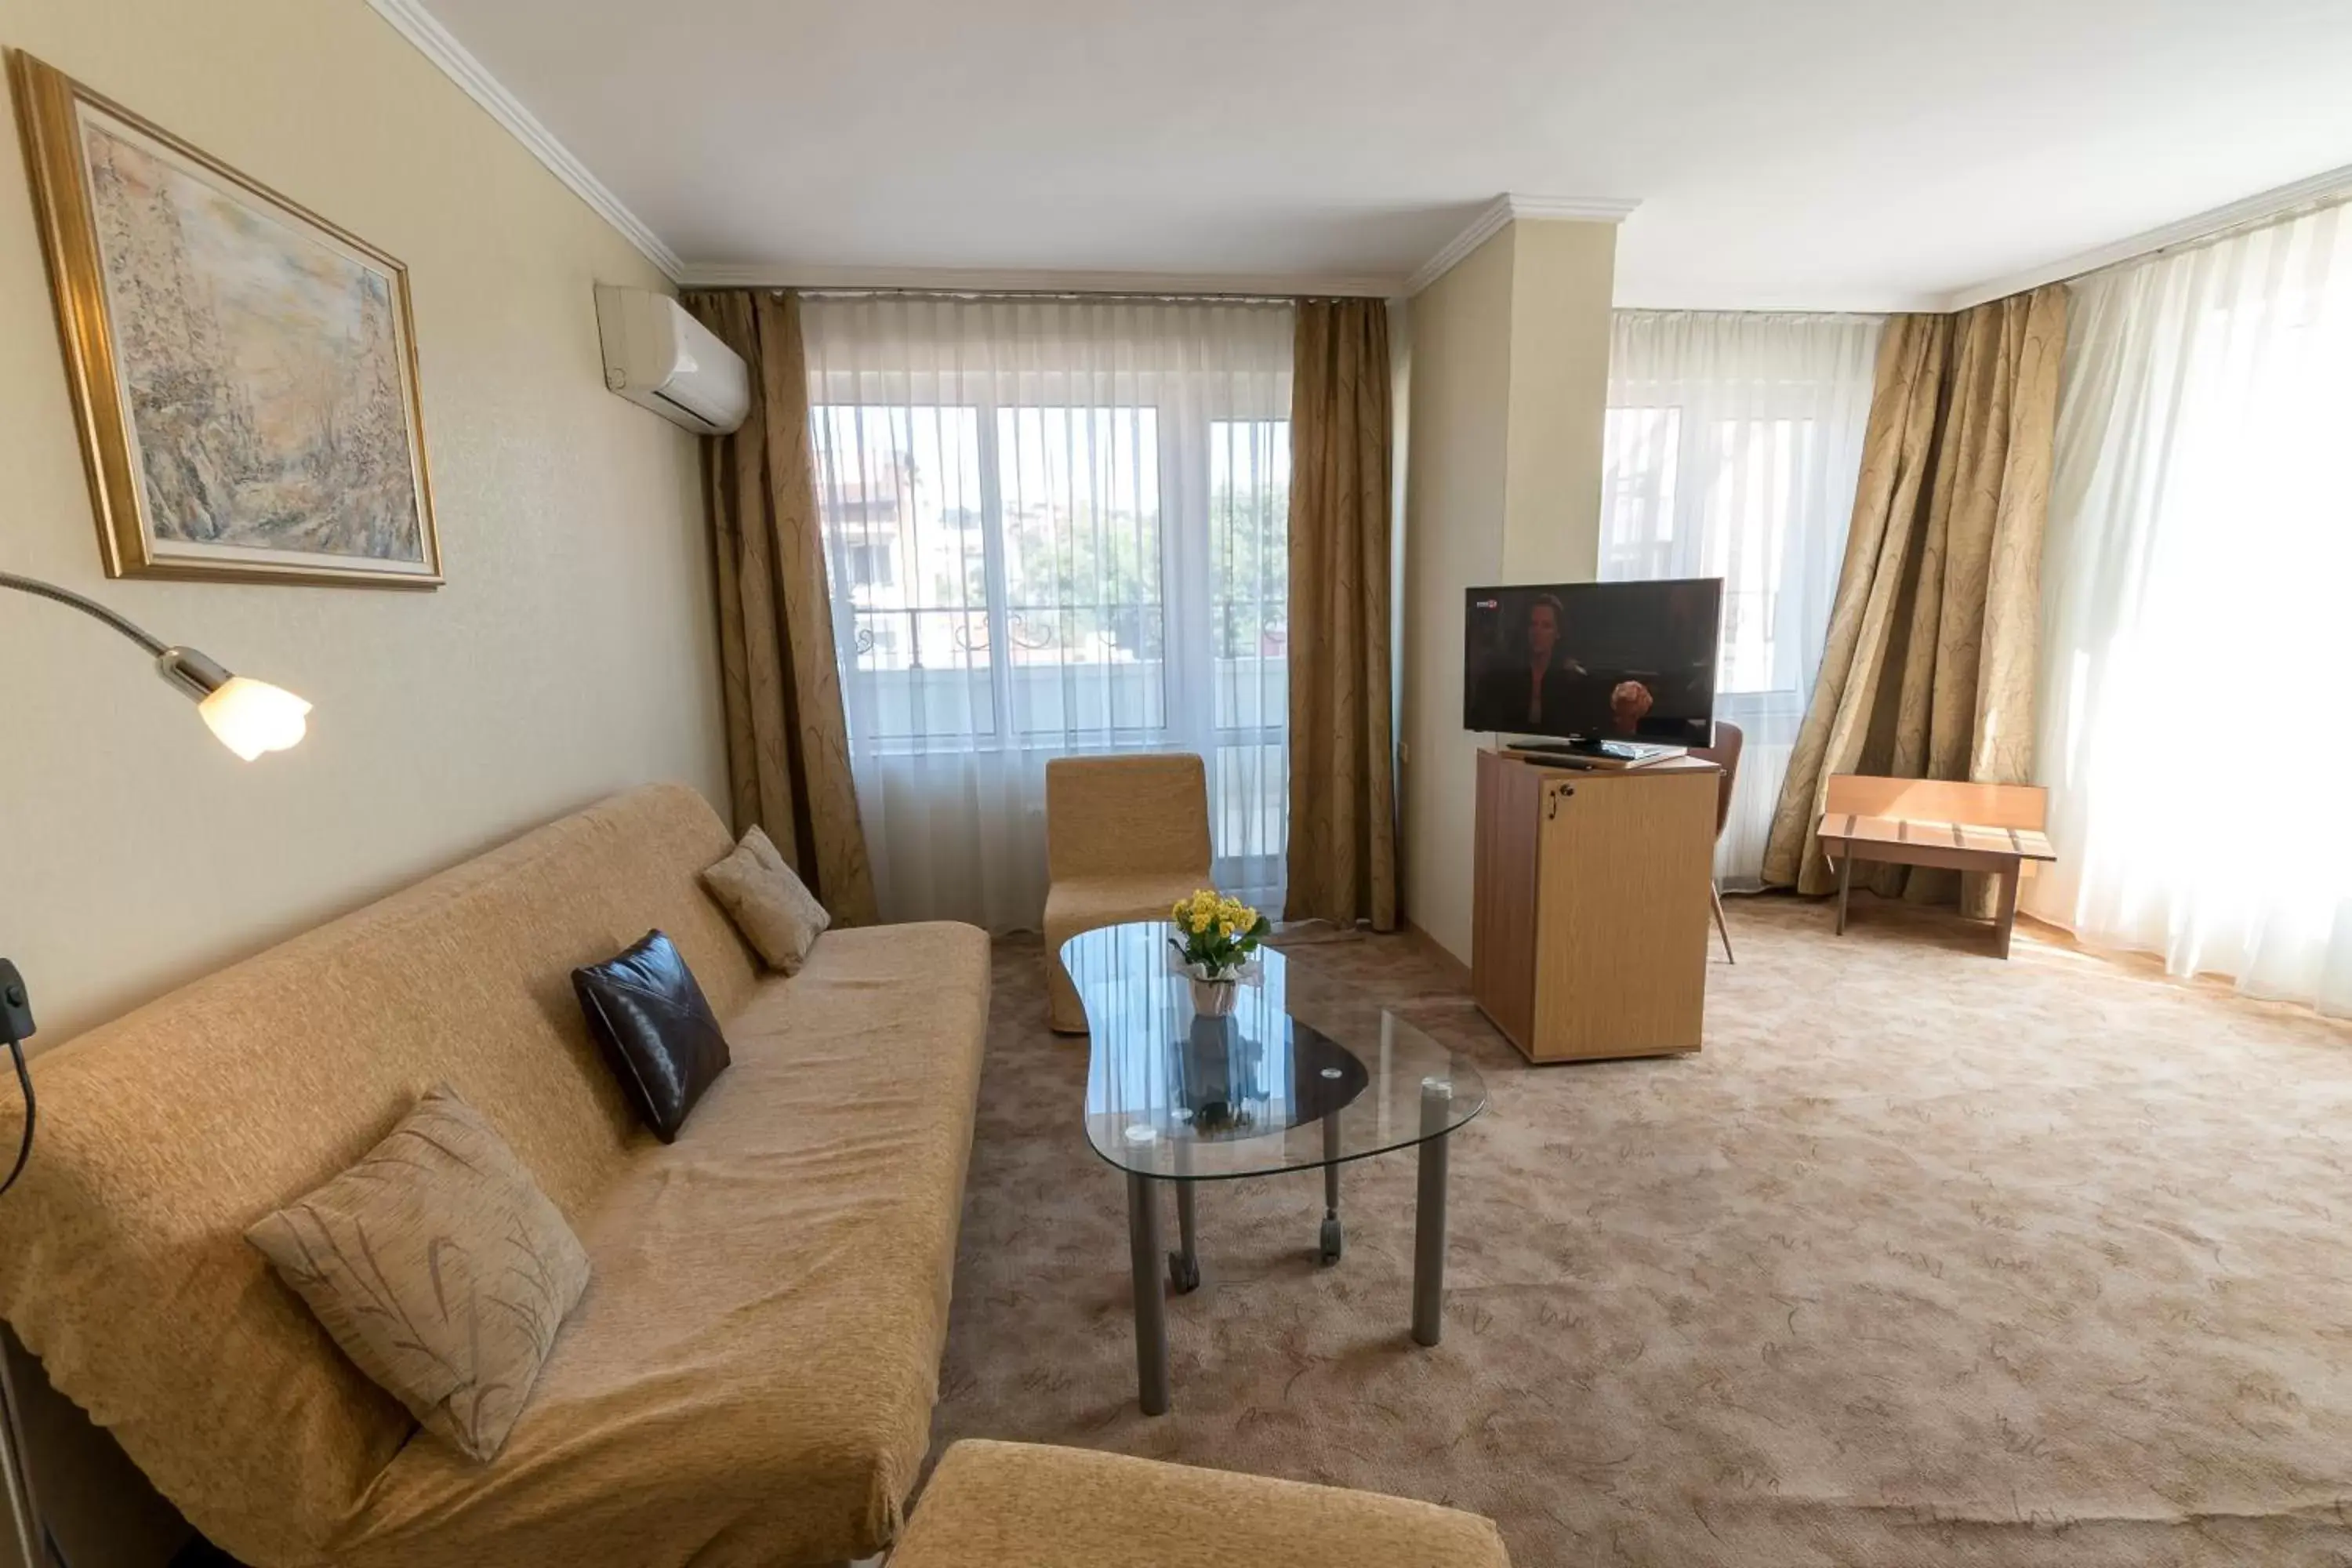 TV and multimedia, Seating Area in Noviz Hotel